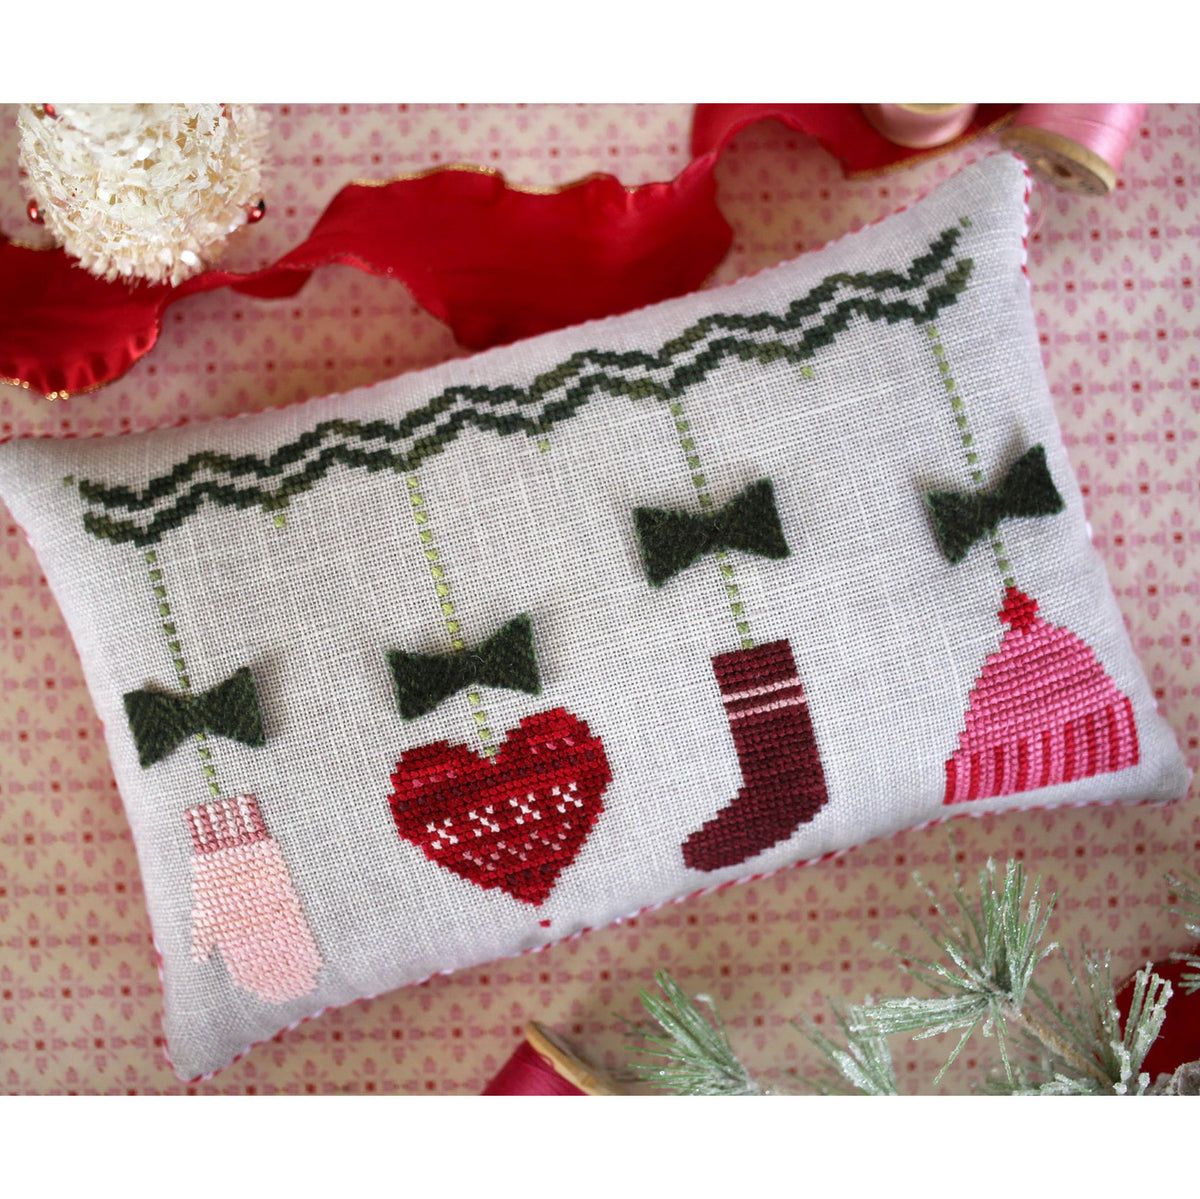 Handknit Holiday Cross Stitch Pattern